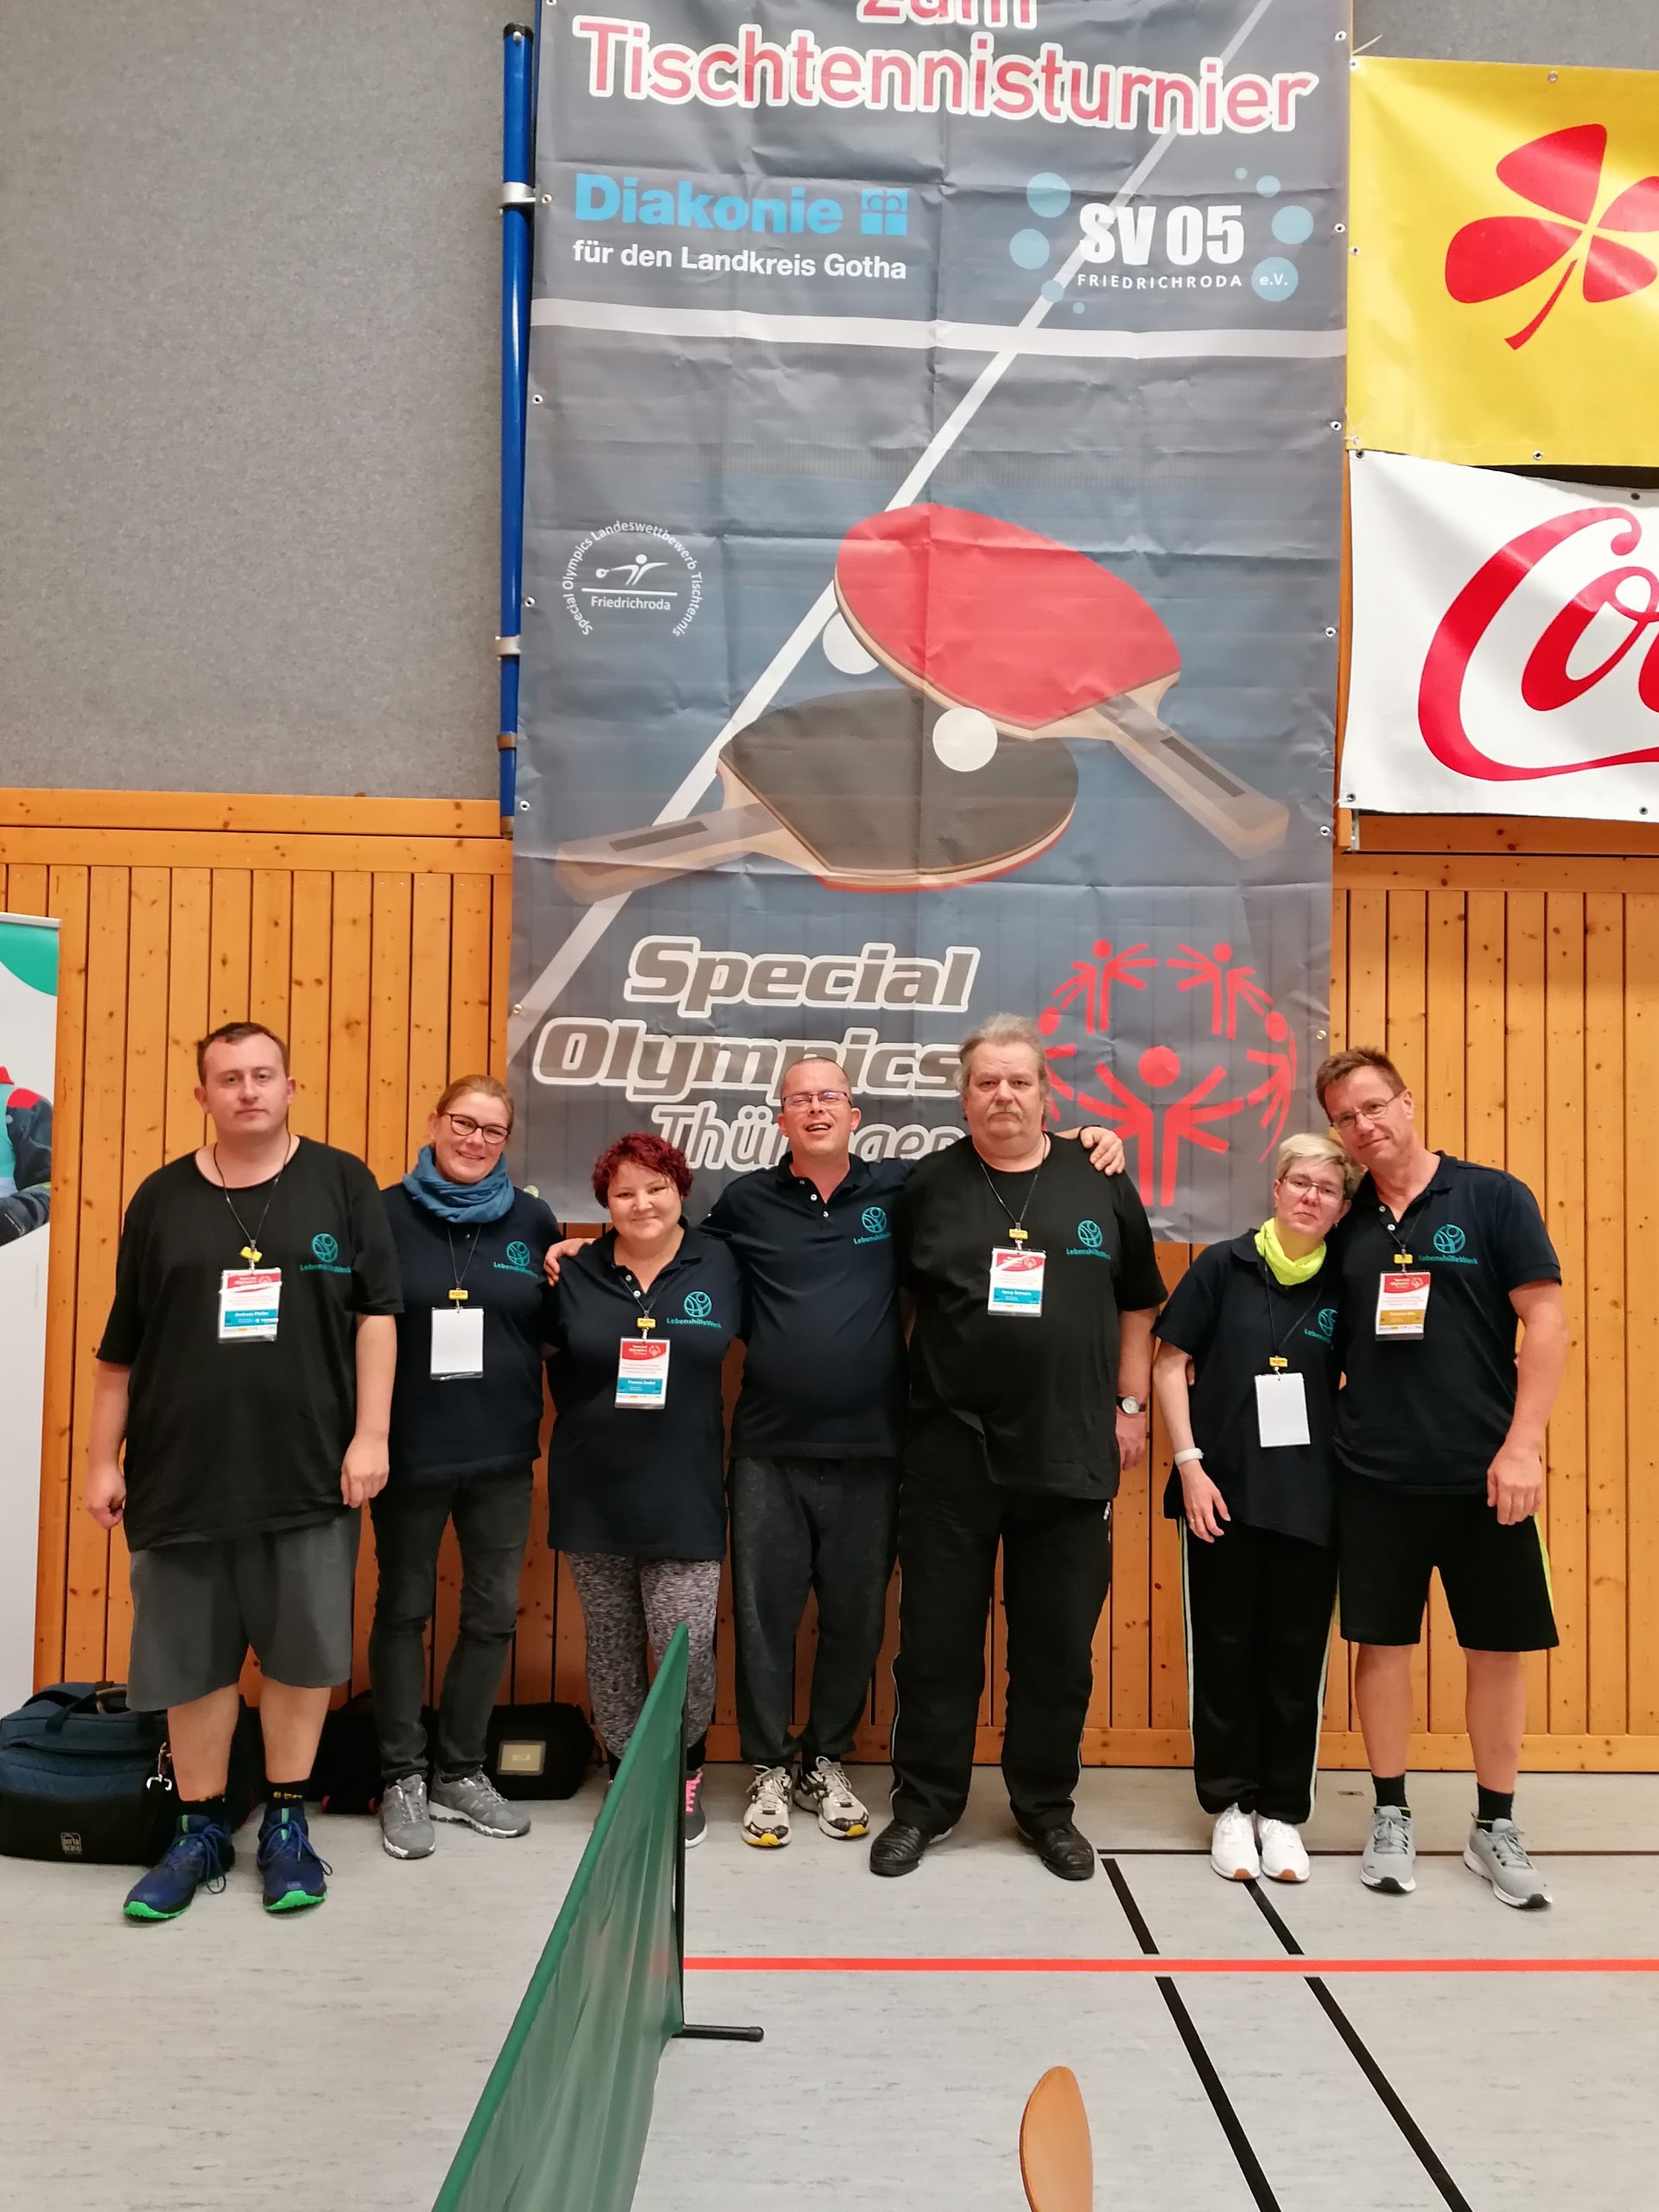 Featured image for “Special Olympics Landeswettbewerb Tischtennis- Thüringen in Friedrichroda”